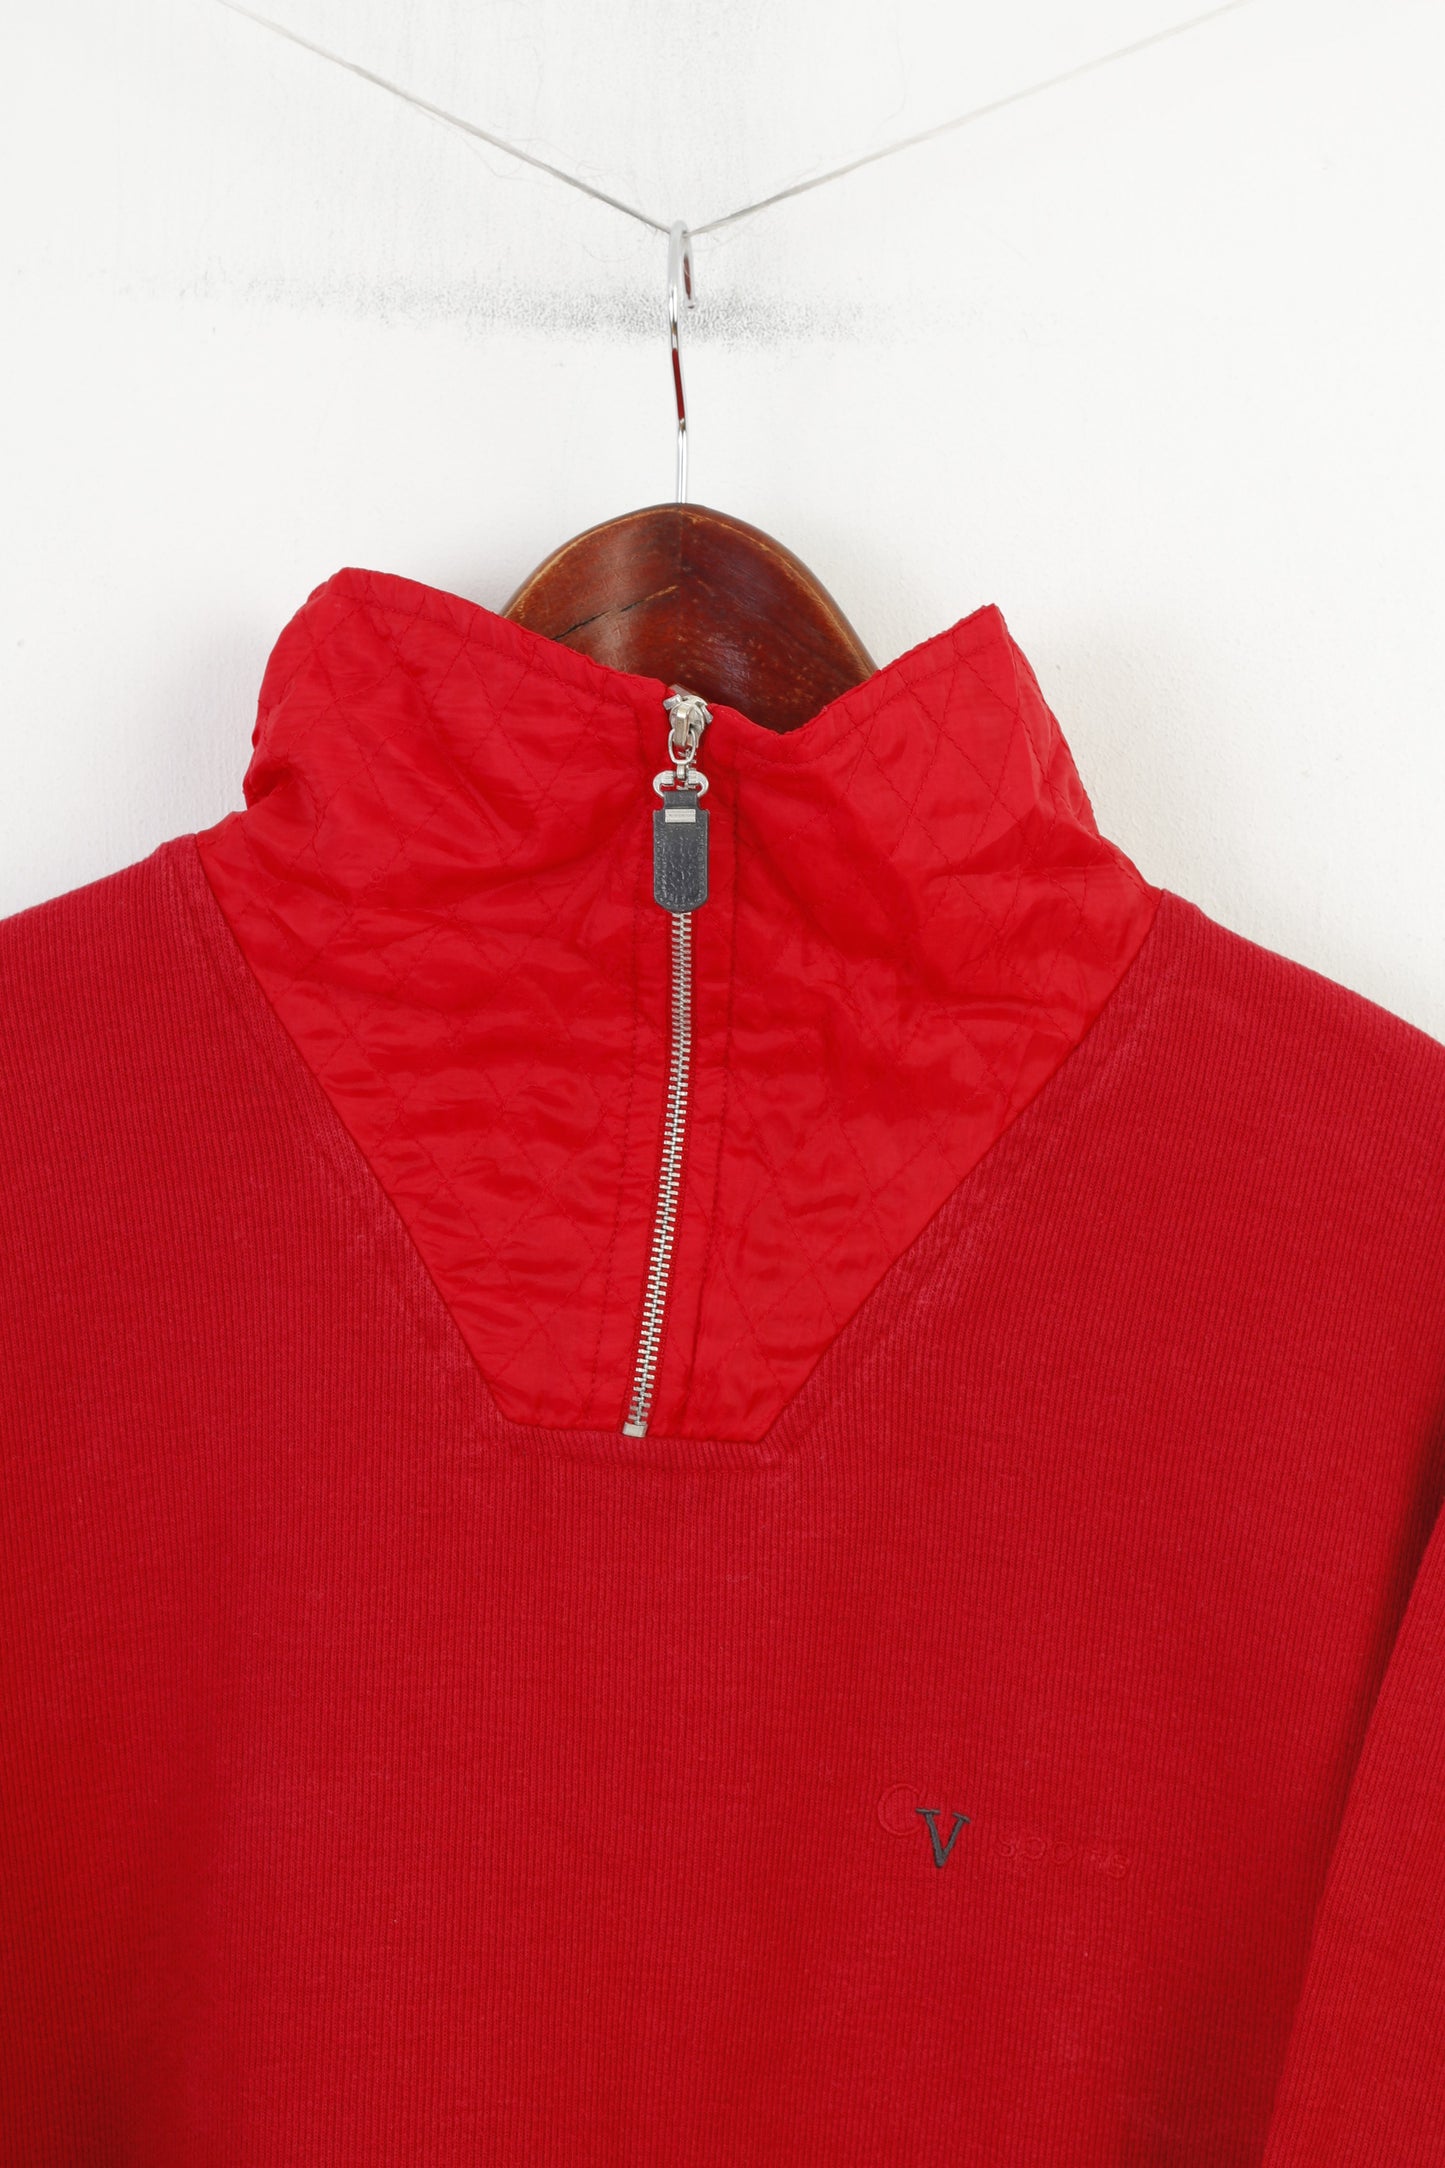 Color Ville Hommes XL Jumper Rouge Coton Pull Zip Neck Vintage Sports Top 